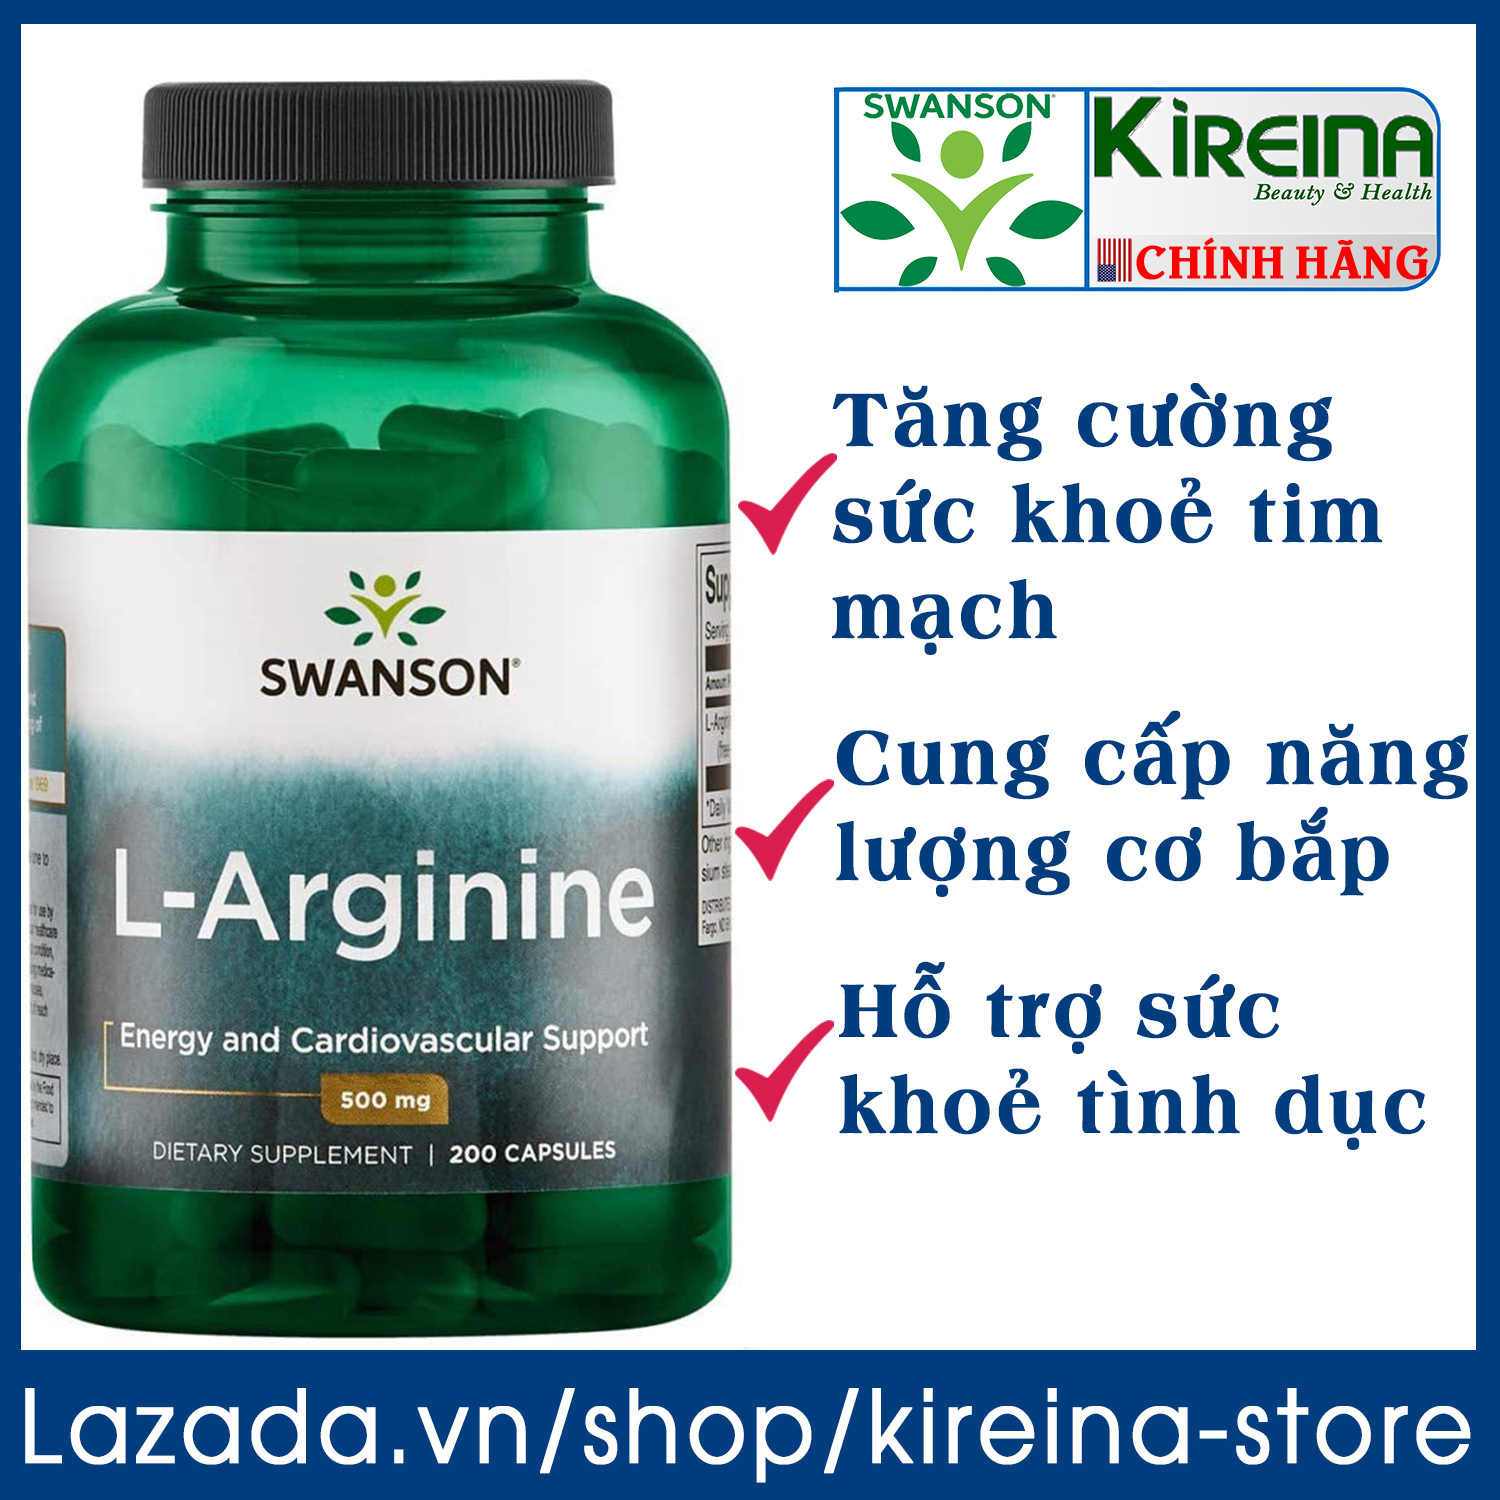 Viên uống Swanson L-Arginine hỗ trợ sức khỏe tim mạch cung cấp amino axit tạo protein cho cơ thể 500 mg (100/200 viên)